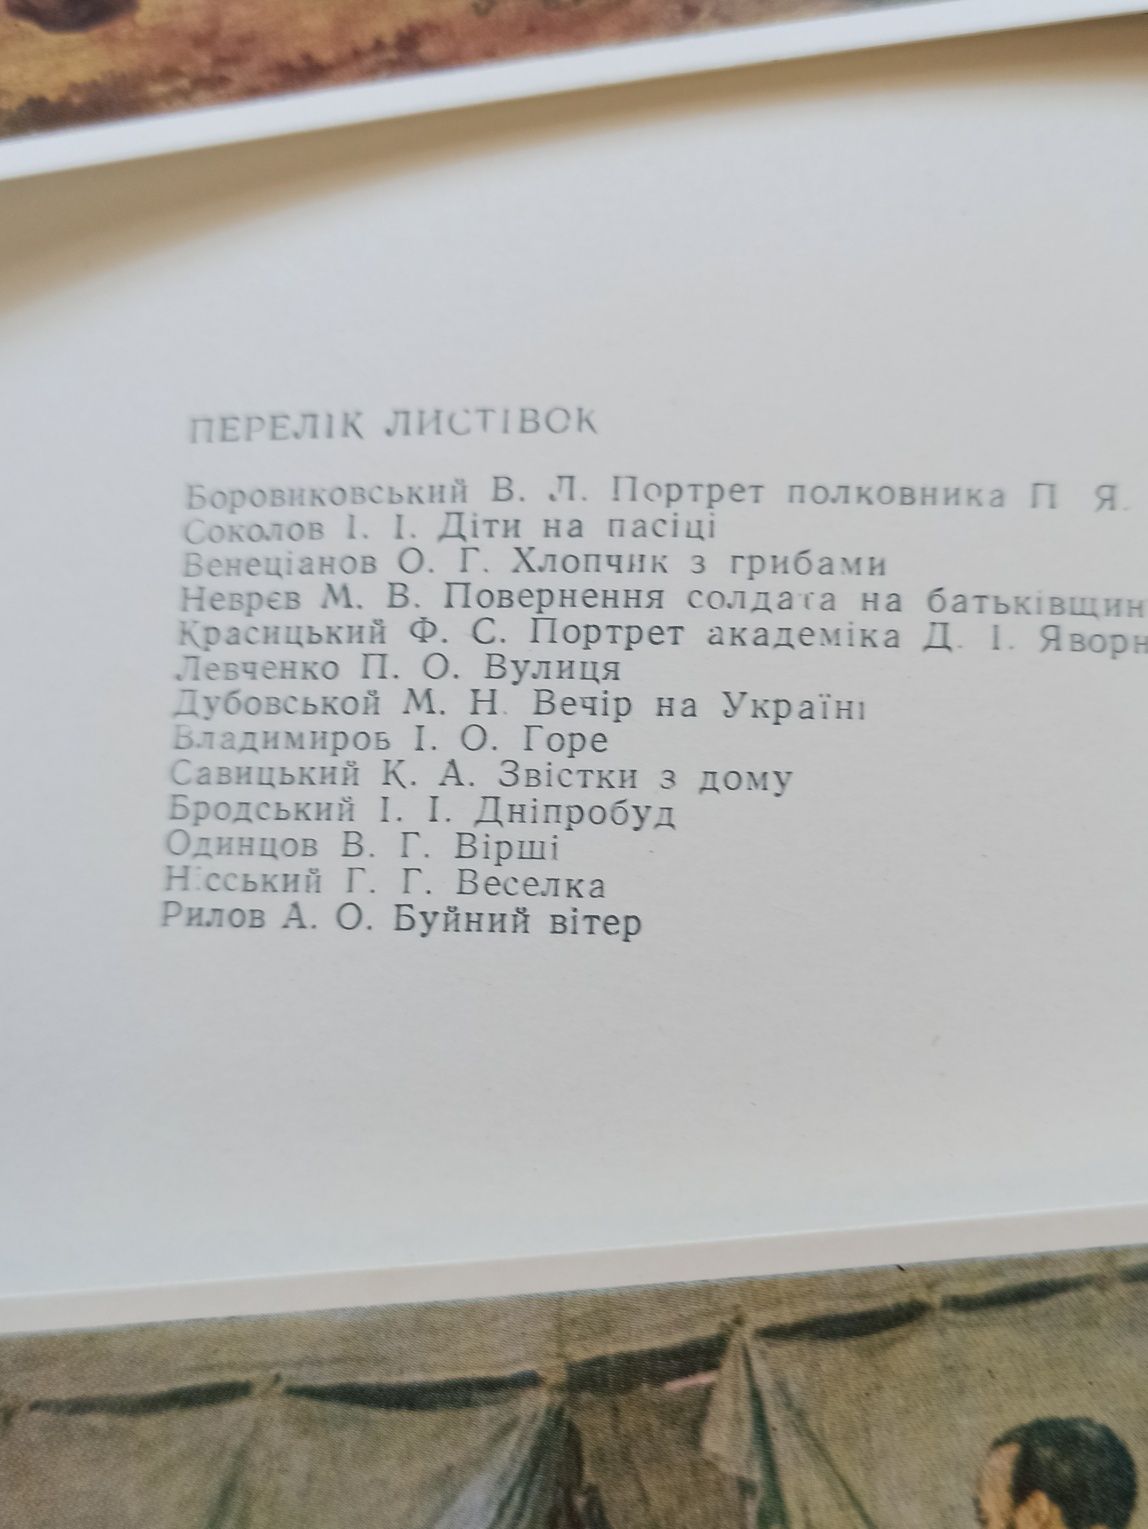 Набор открыток "Дніпропетровський художній музей" 1971